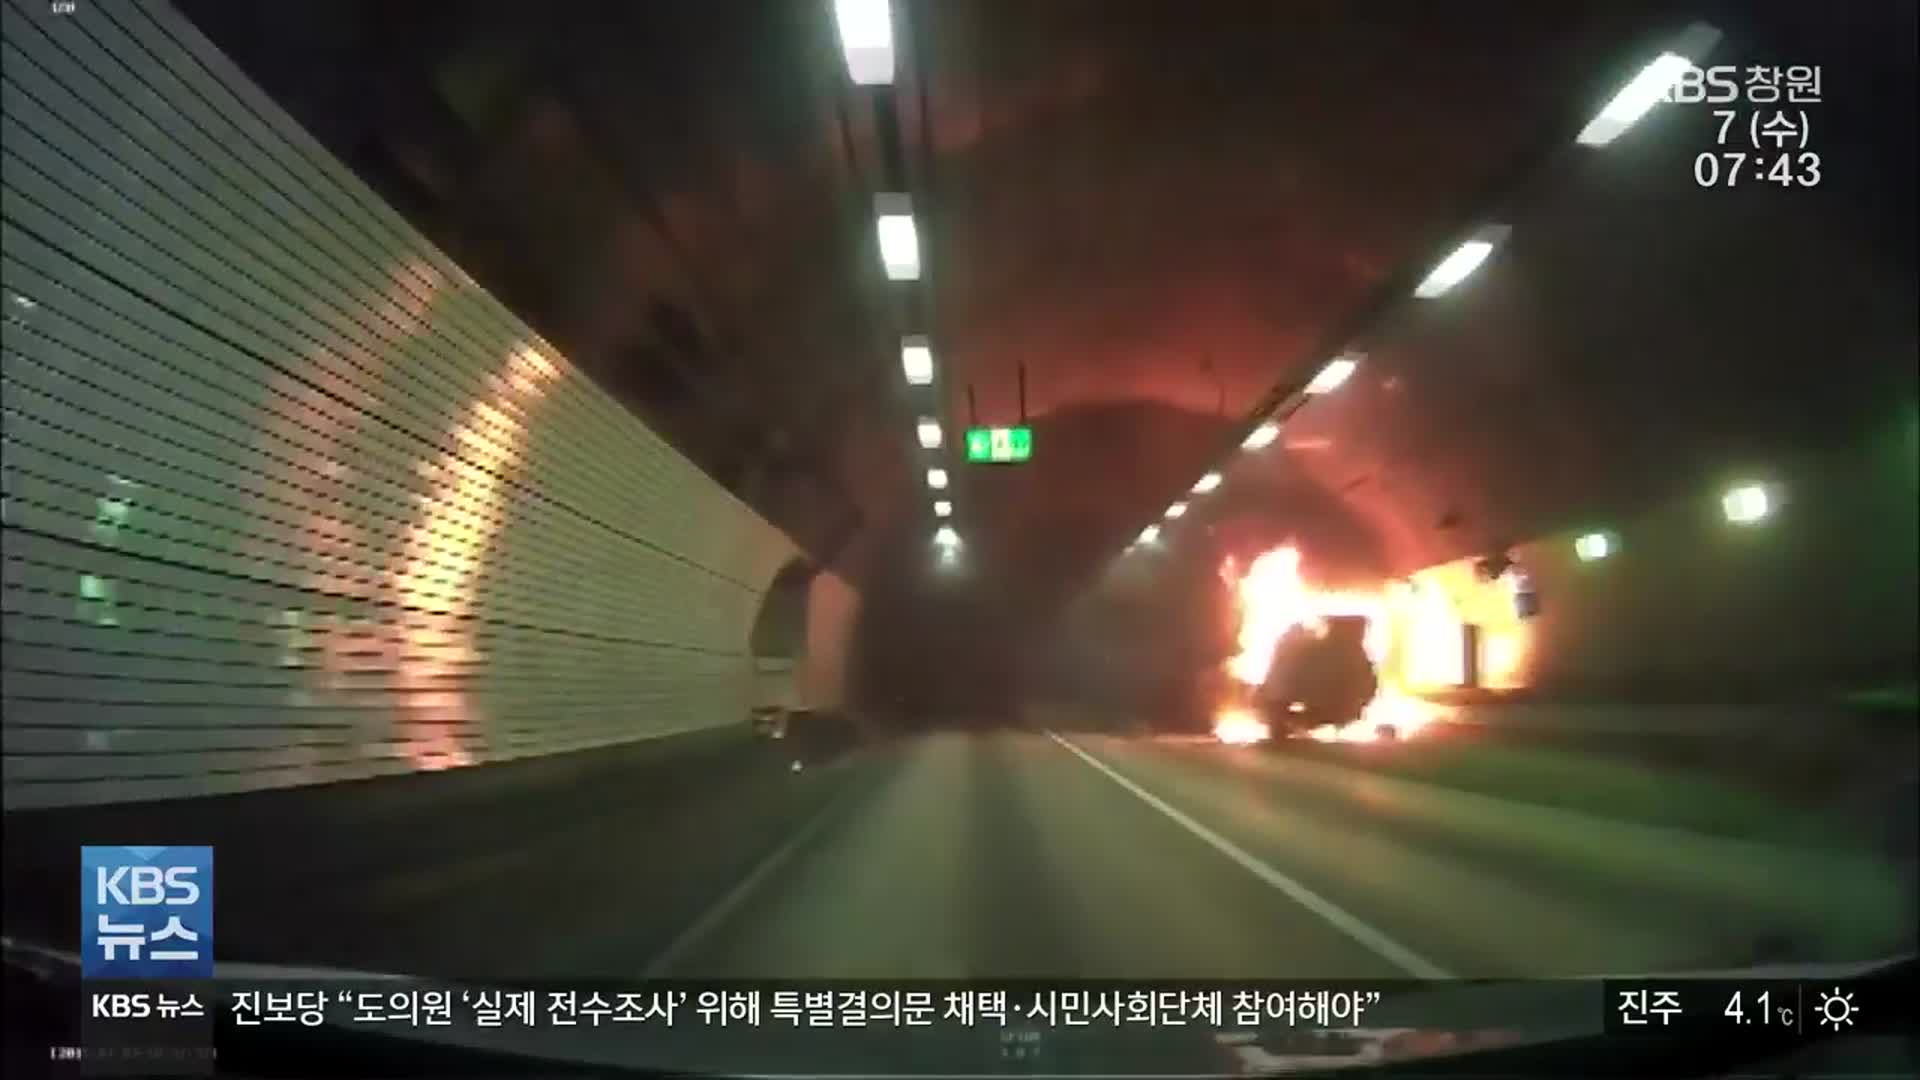 [안전]③ 잇따르는 터널 화재 사고…대처 요령은?